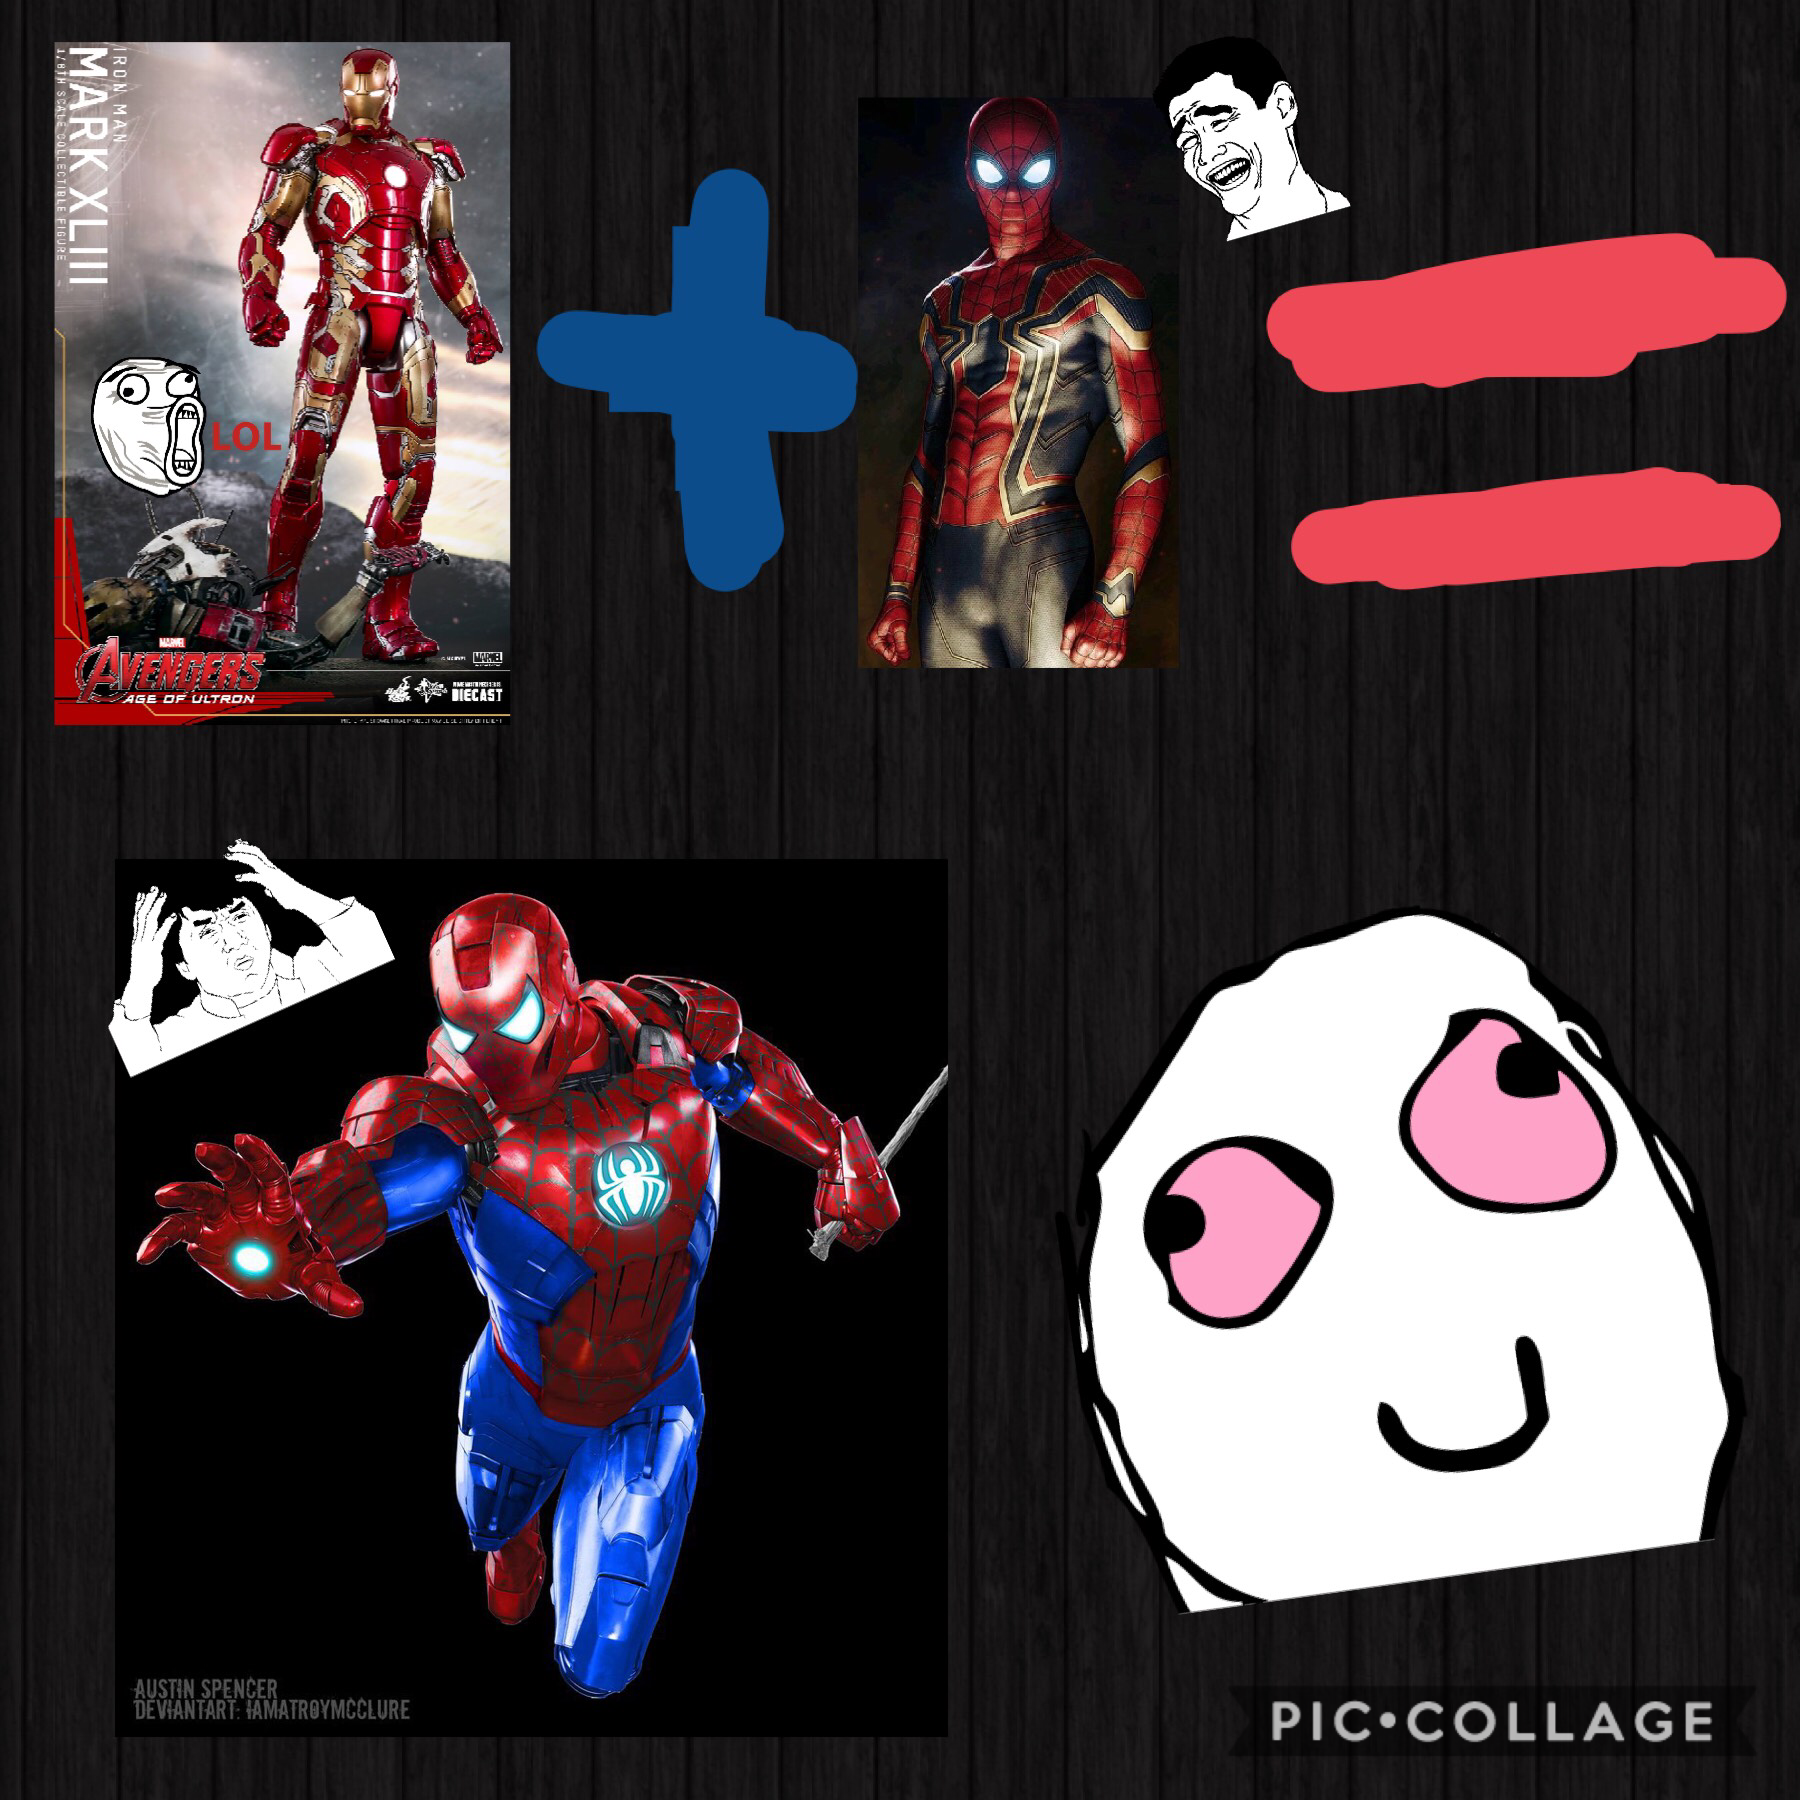 Iron man + spider man = ???